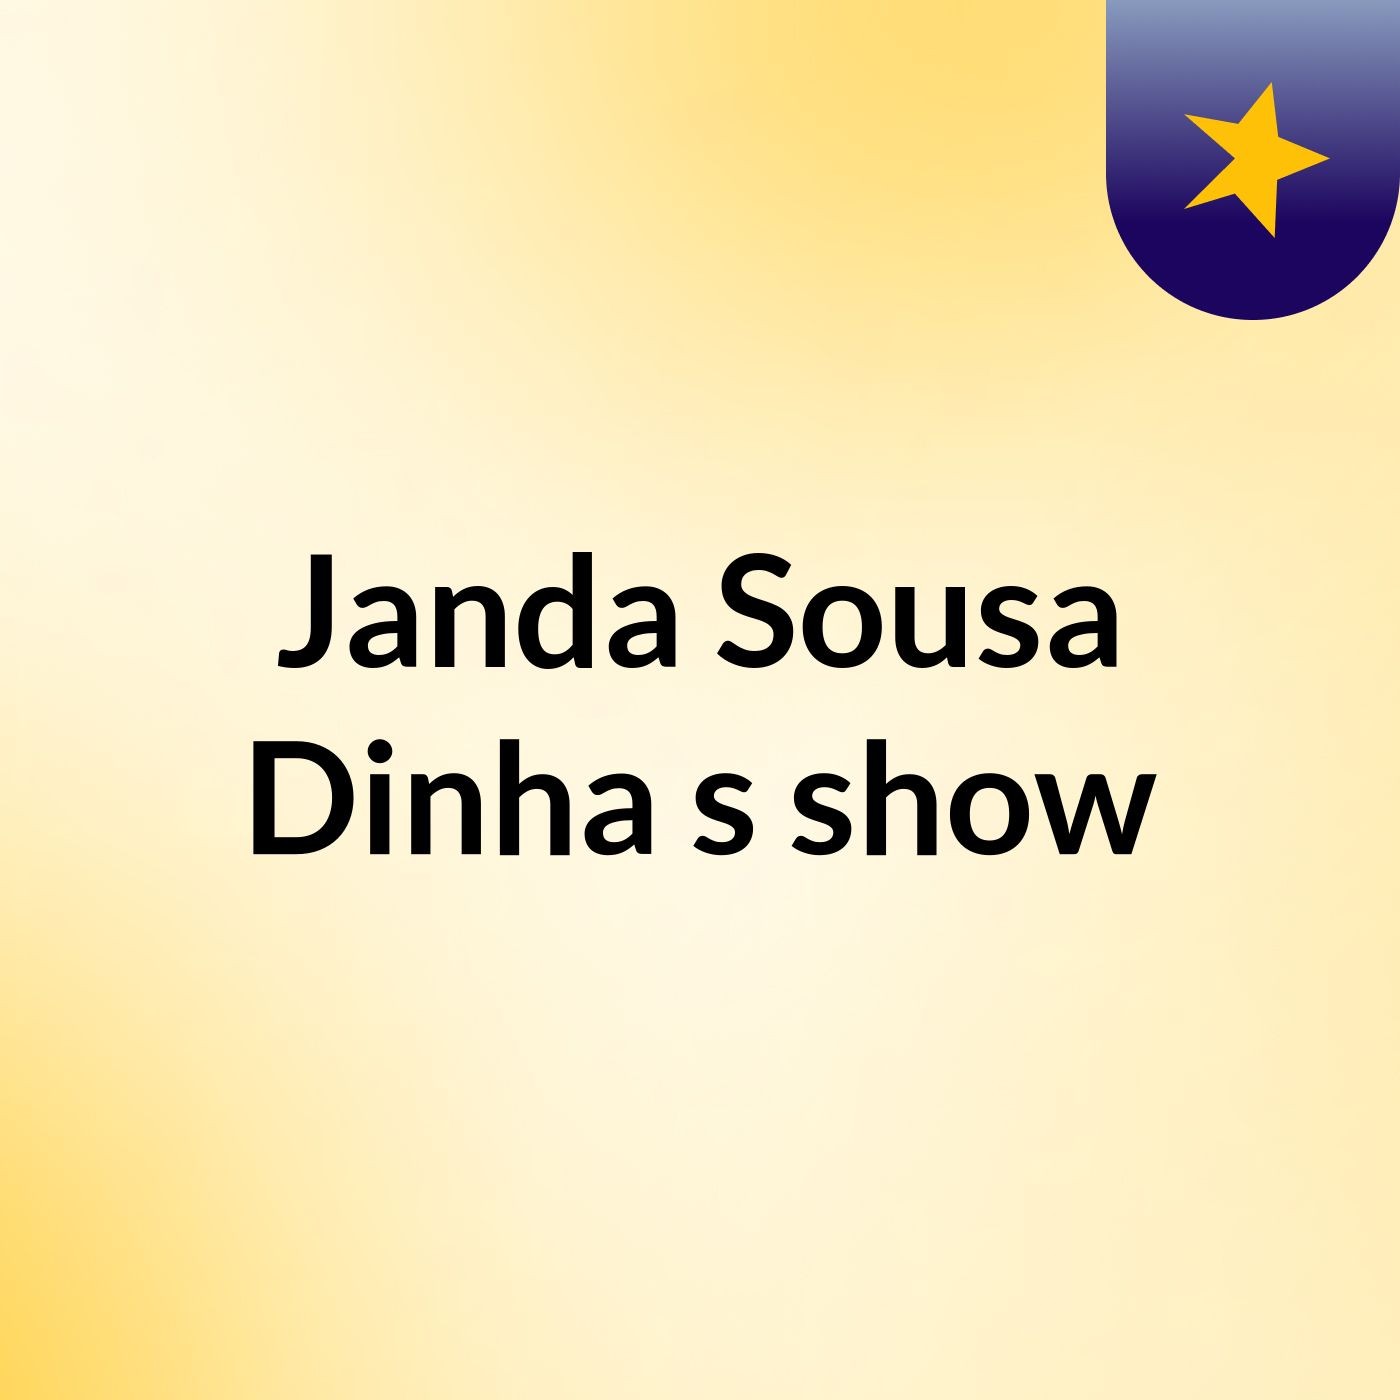 Janda Sousa Dinha's show